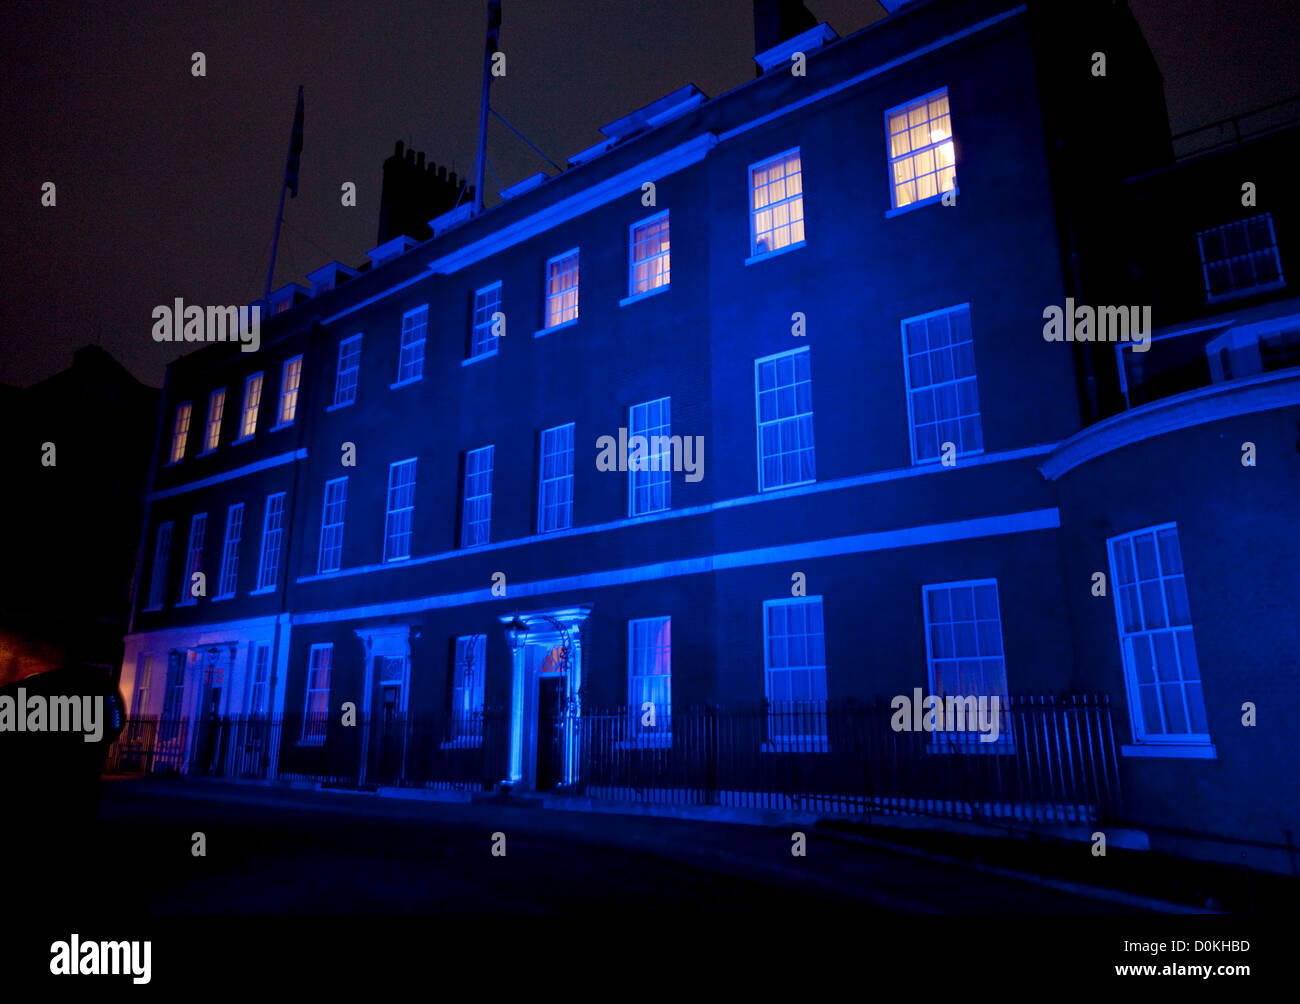 14/11/2012. Londres, R.-U., Downing Street ce matin (14/11/2012), s'allume en bleu, pour la journée mondiale du diabète. Banque D'Images